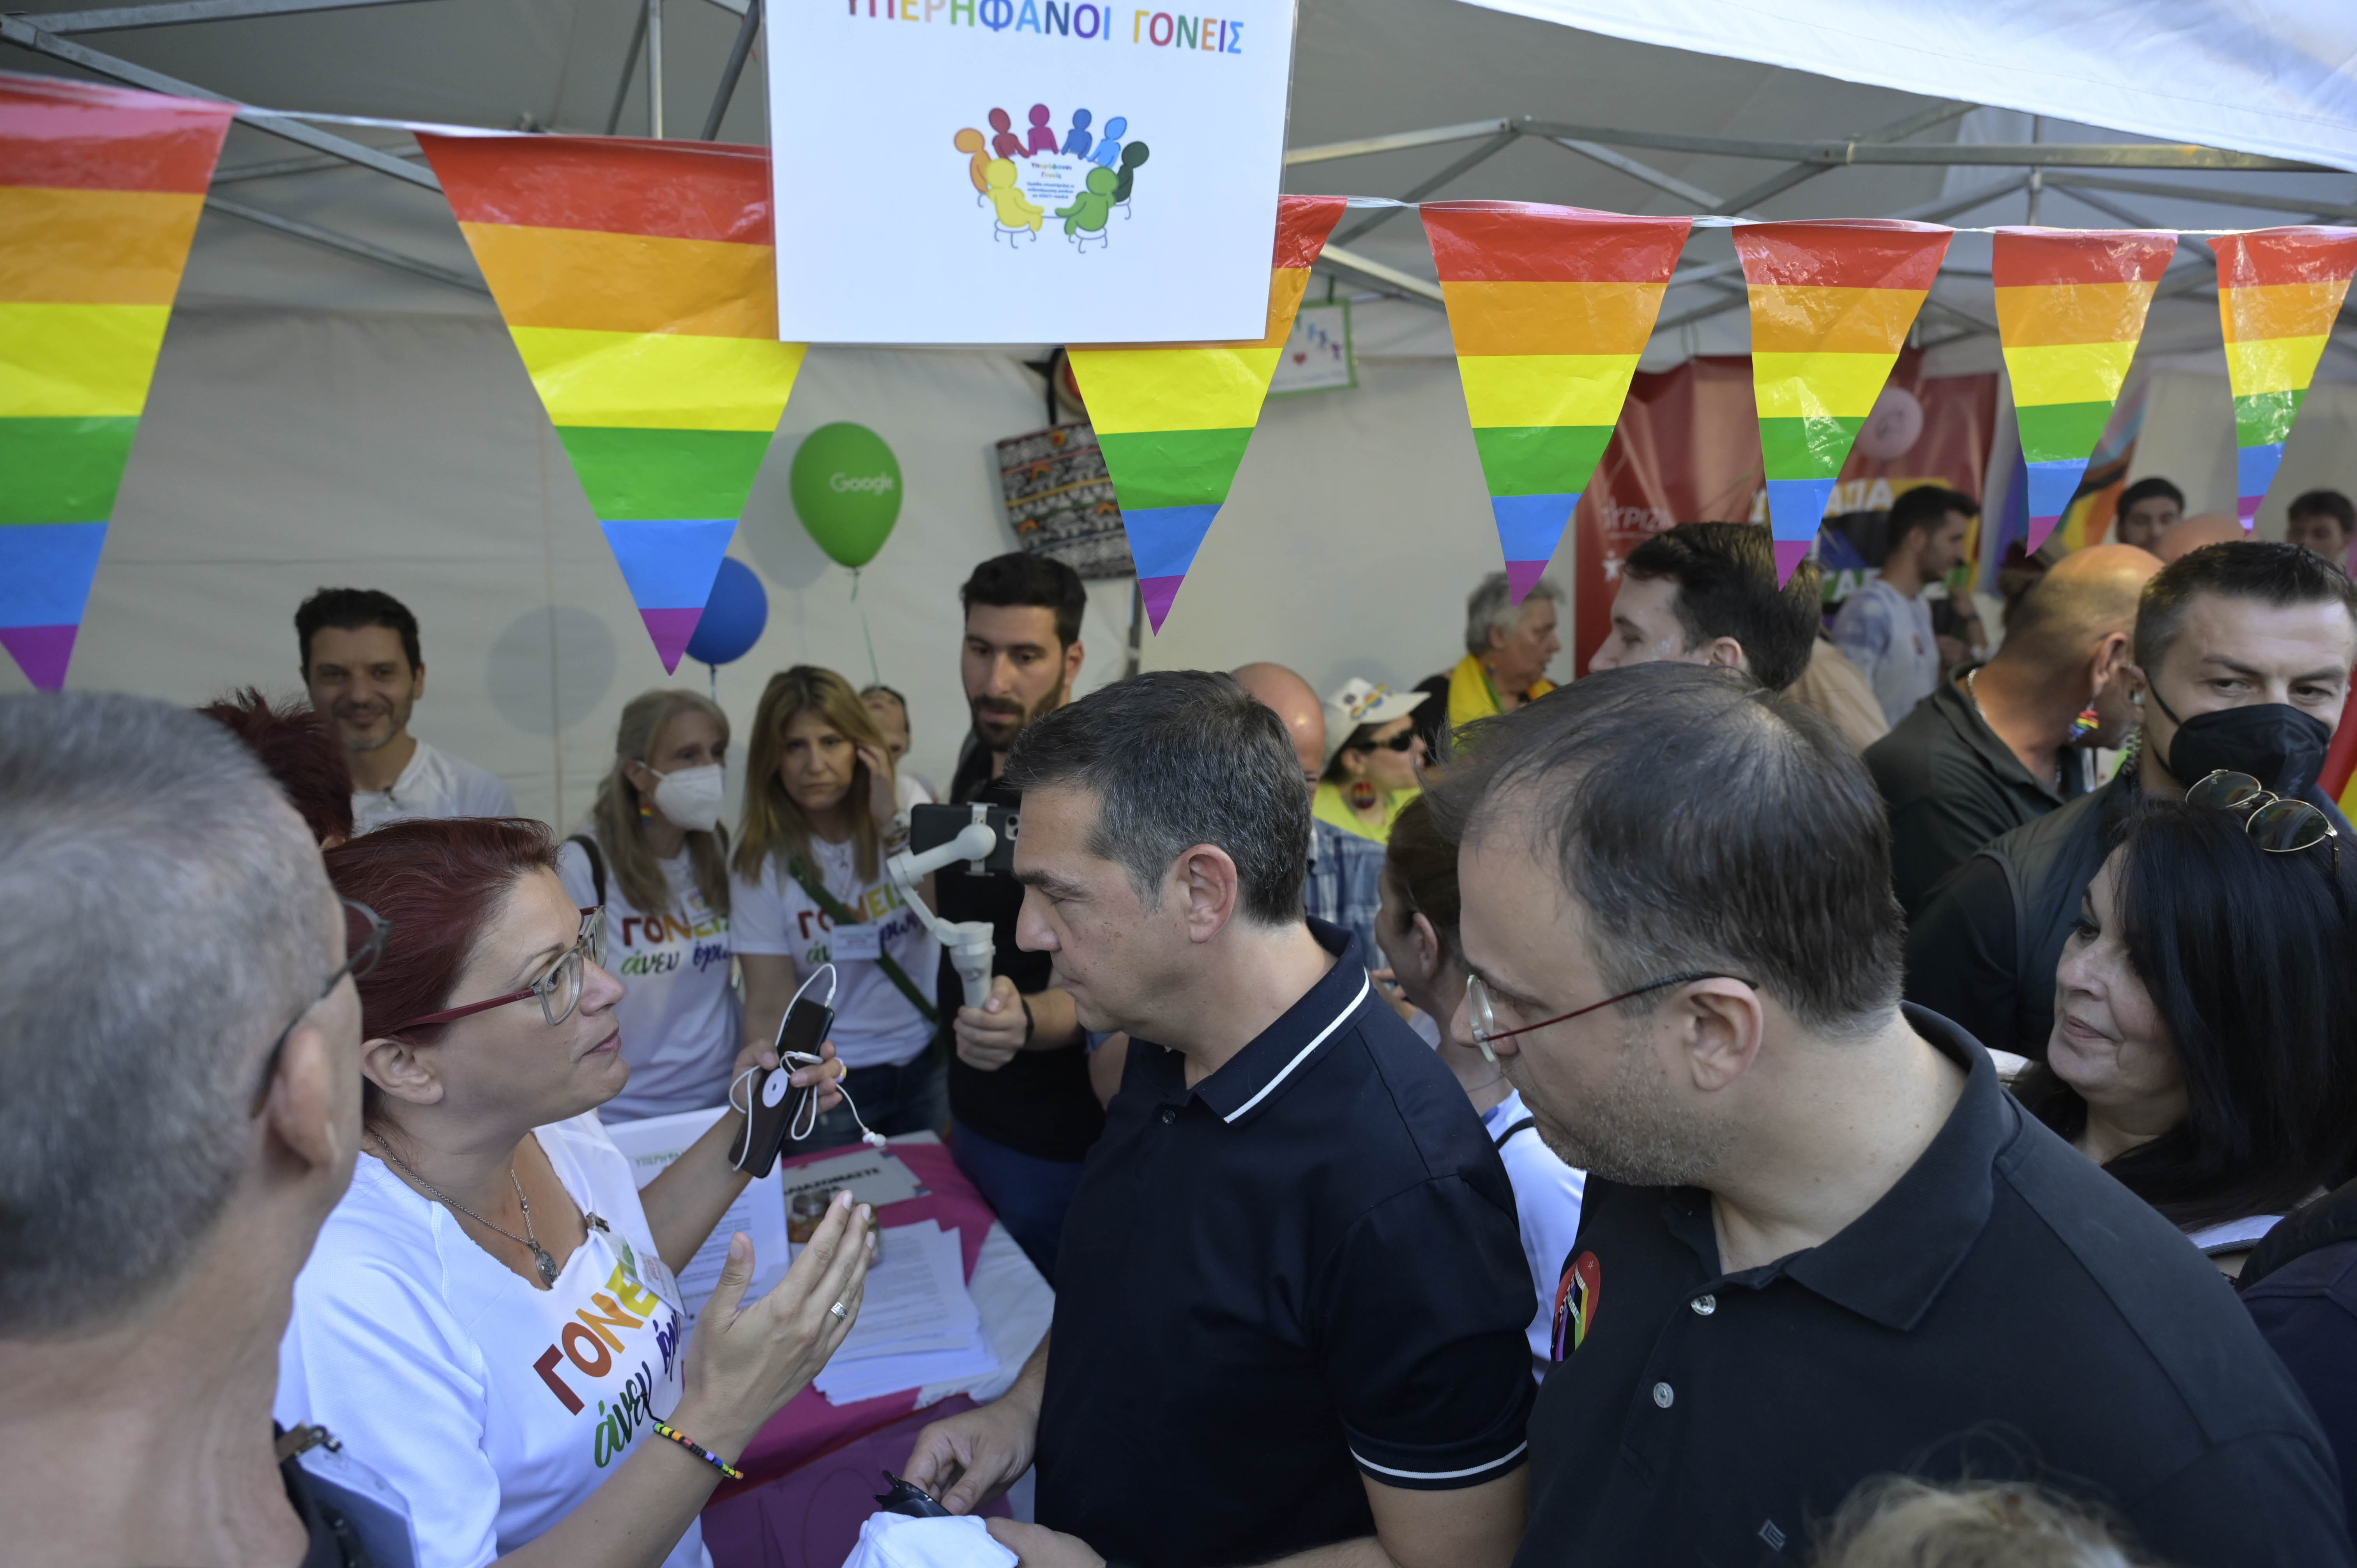 Τσίπρας από το Athens Pride: Χαρά μας να ψηφίσει η κυβέρνηση την πρότασή μας για τα δικαιώματα της ΛΟΑΤΚΙ κοινότητας